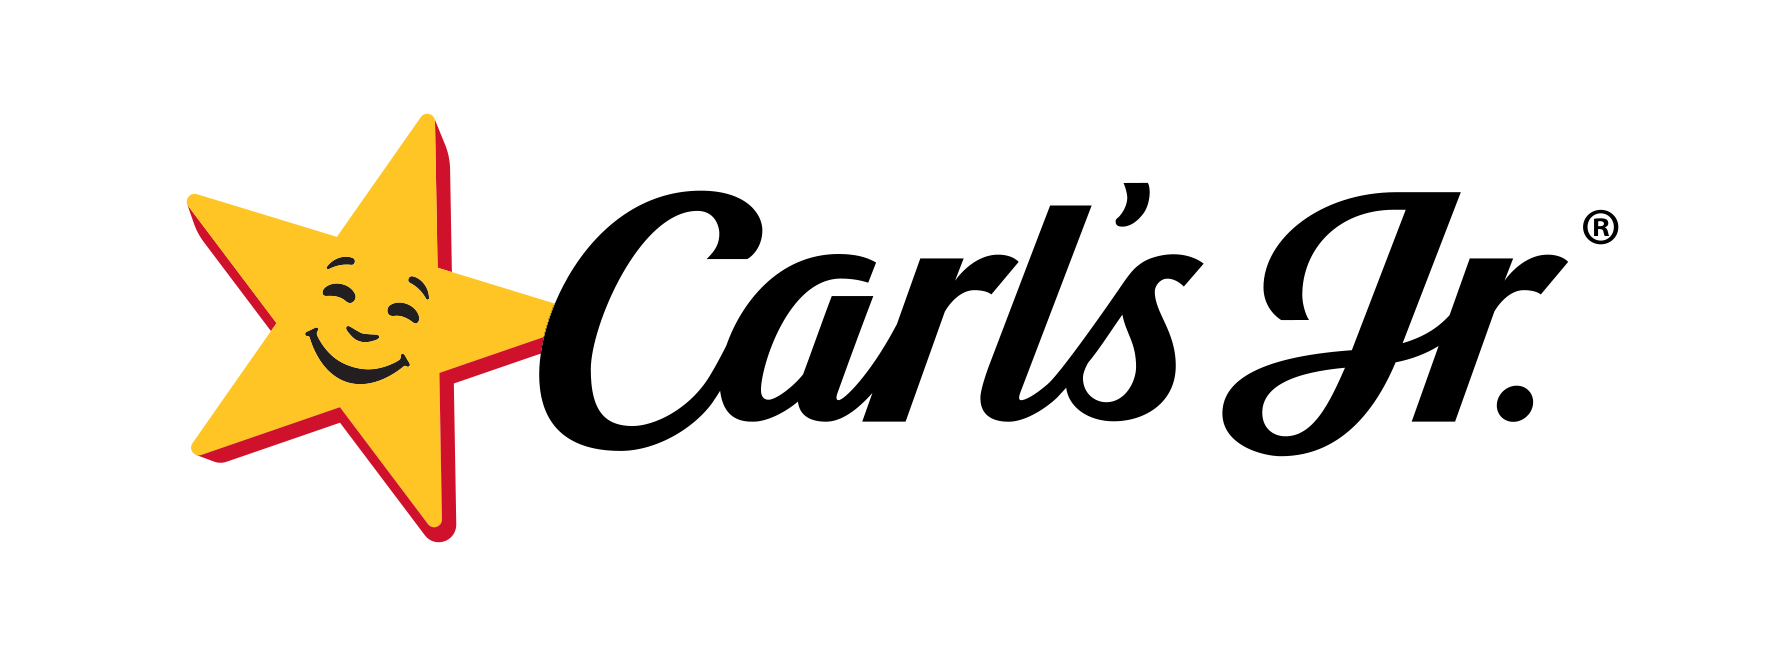 Carls_logo_(1)